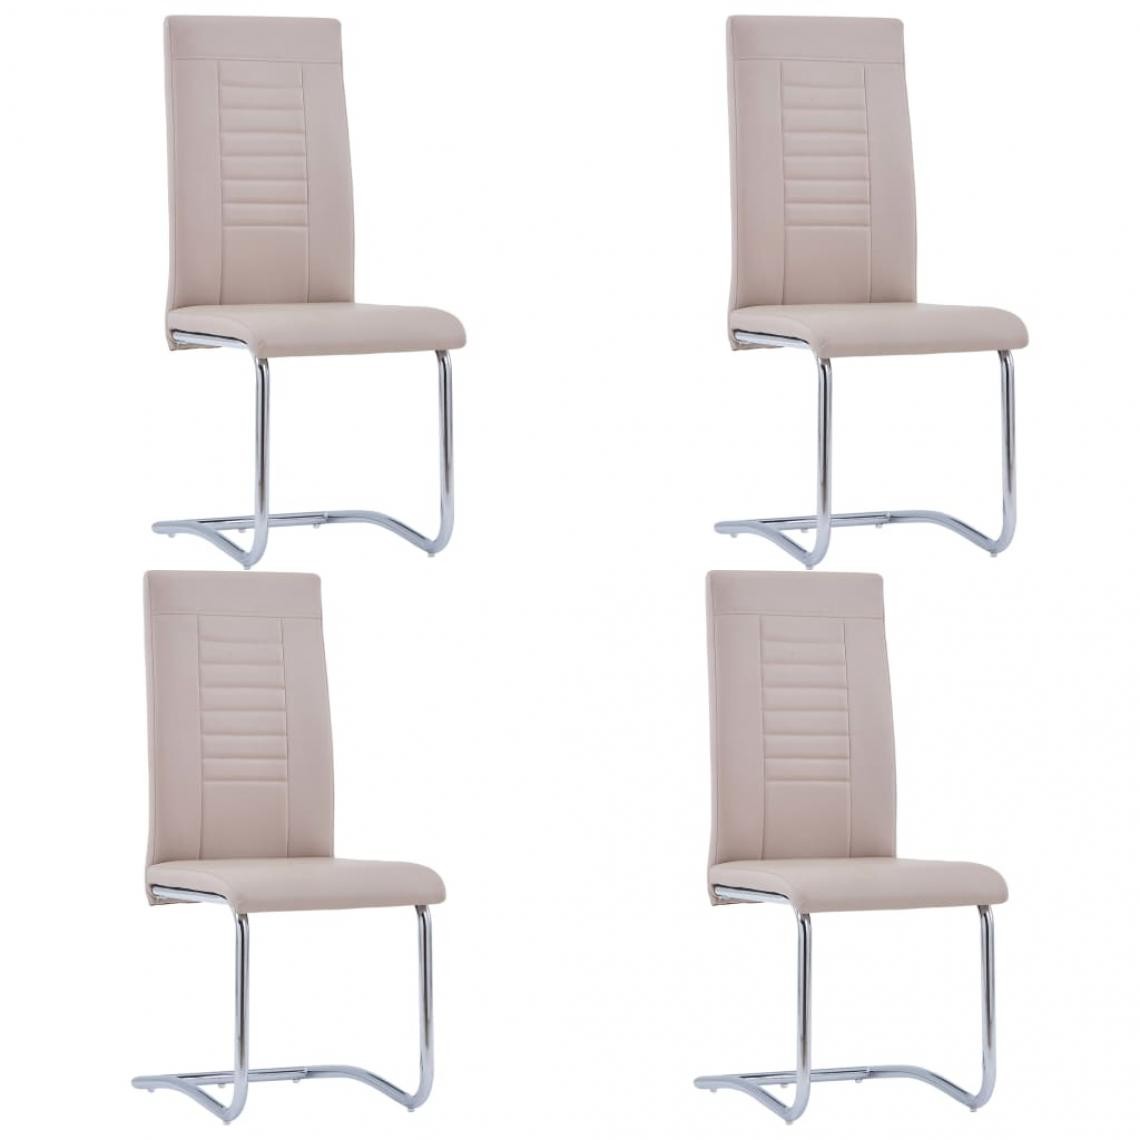 Decoshop26 - Lot de 4 chaises de salle à manger cuisine cantilever design moderne similicuir cappuccino CDS021354 - Chaises